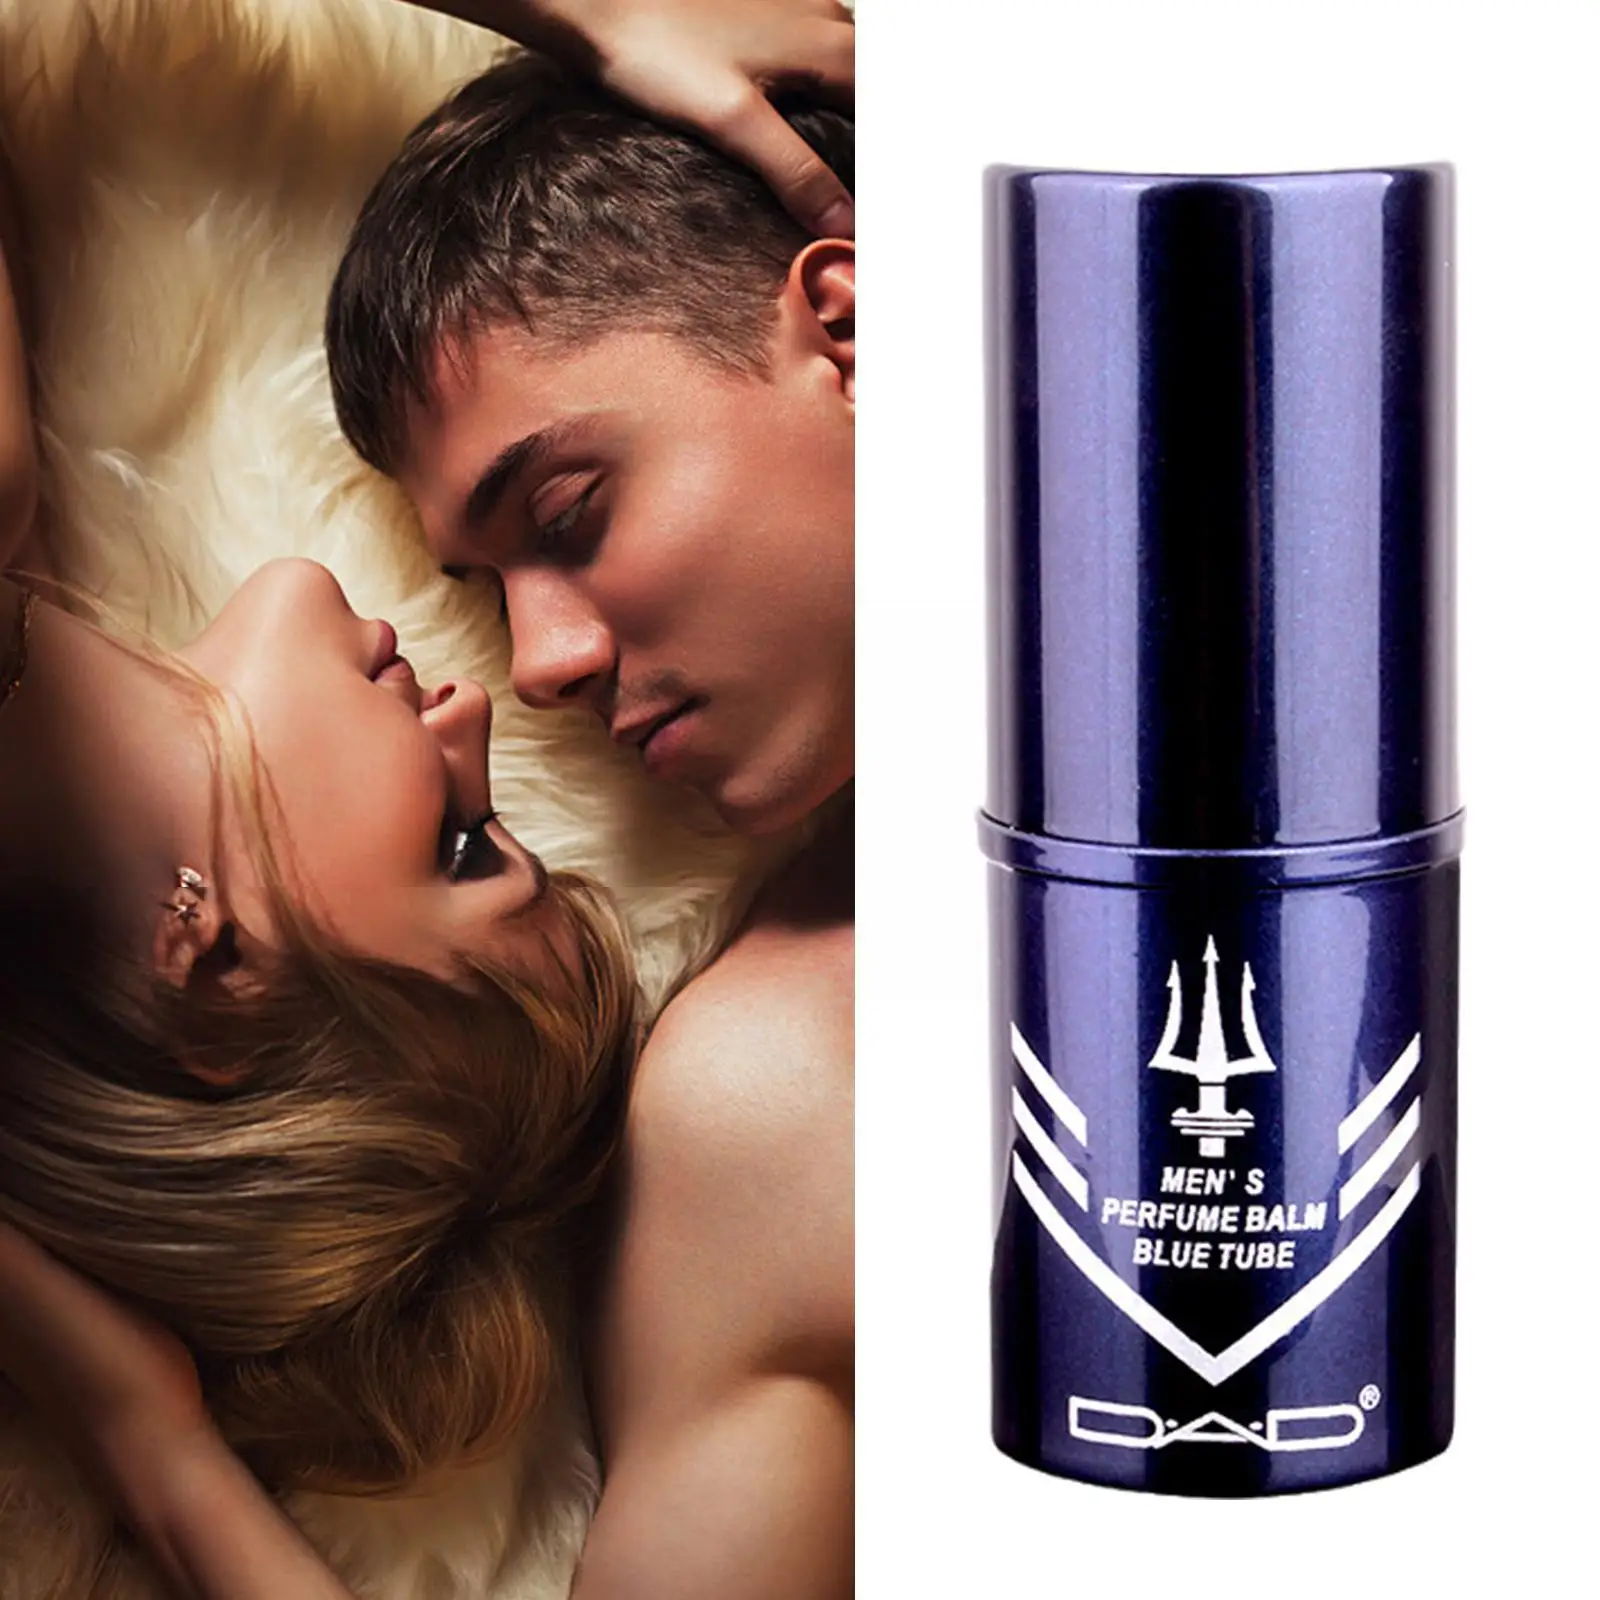 

Портативный карманный парфюм, мужские парфюмы, ароматизированная вода для мужчин, антиперспирант и аромат, освежающий и свежий